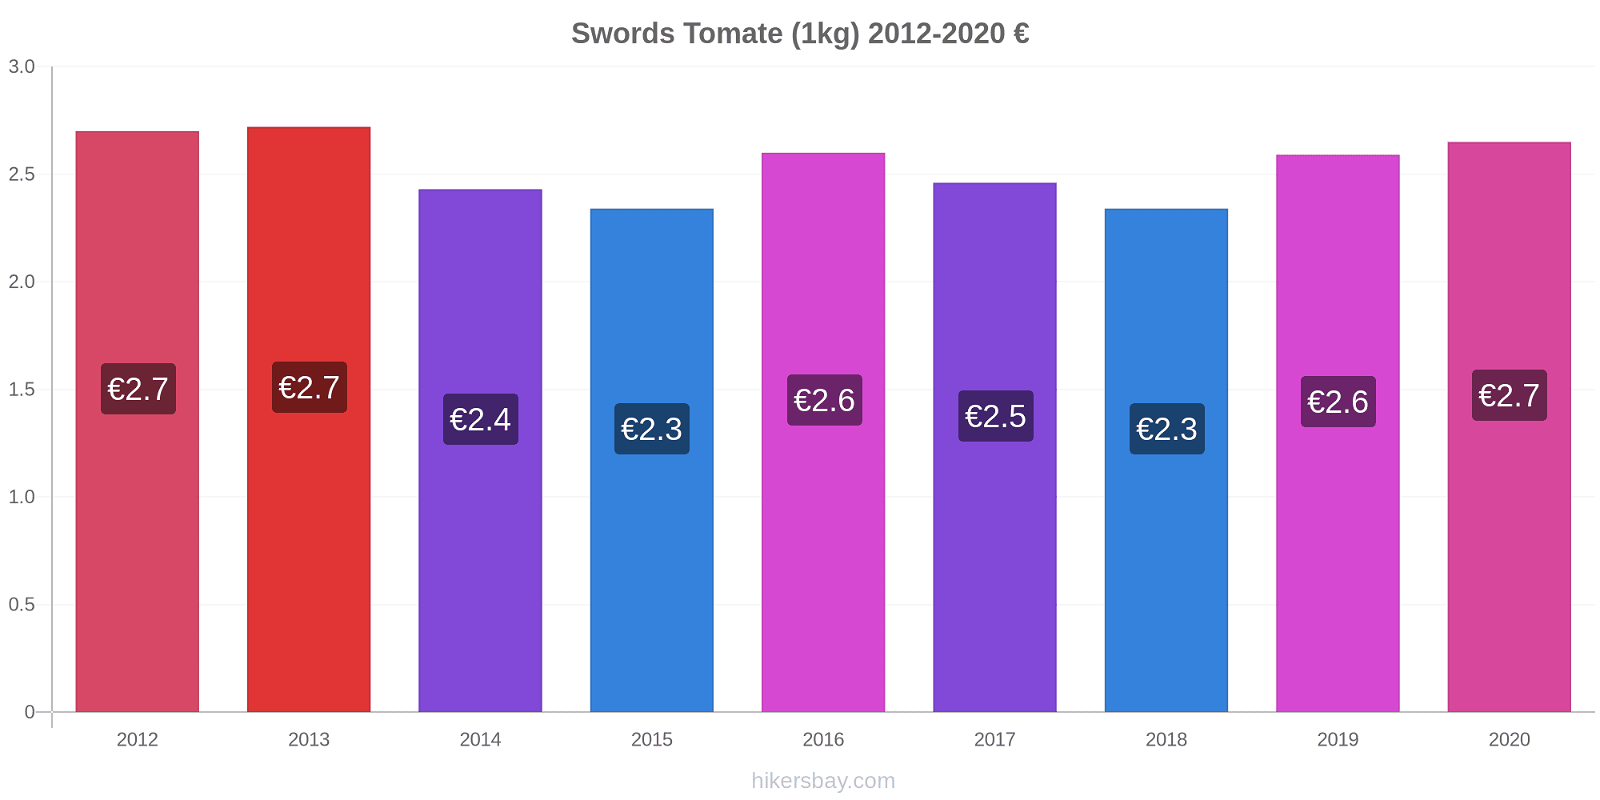 Swords changements de prix Tomate (1kg) hikersbay.com